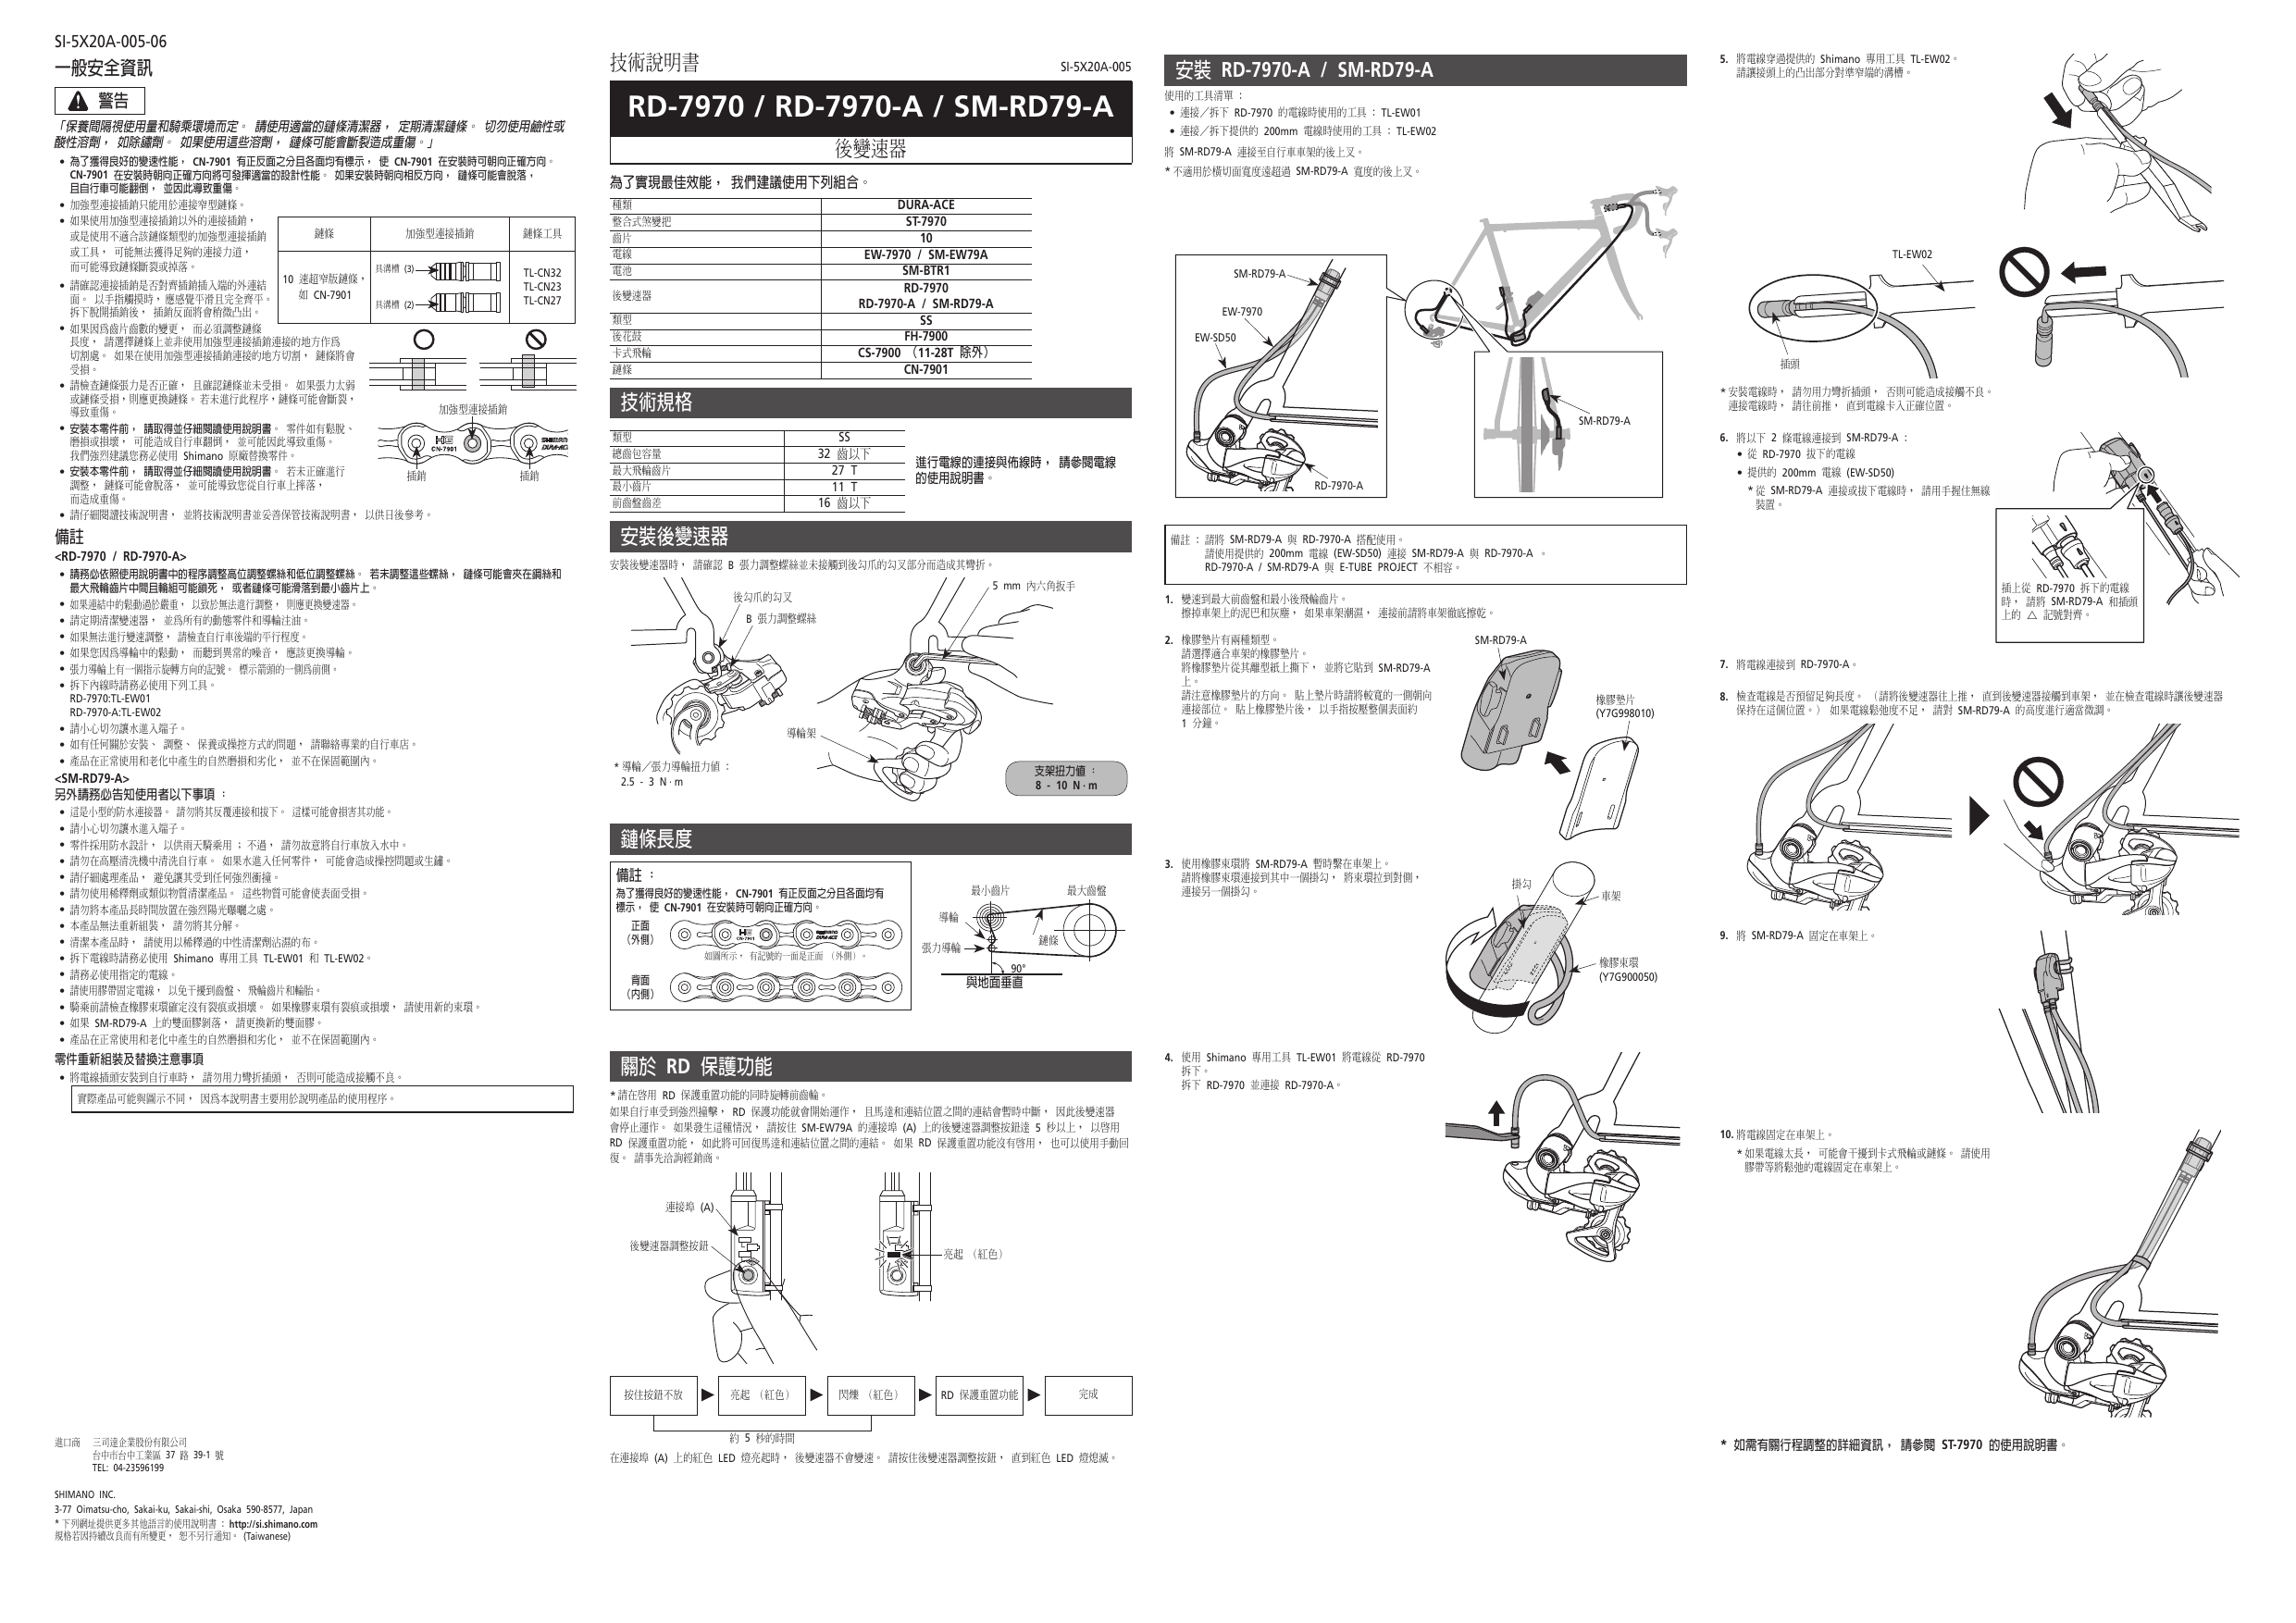 Shimano Rd 7970 A Sm Rd79 A 後變速器ユーザーマニュアル Manualzz